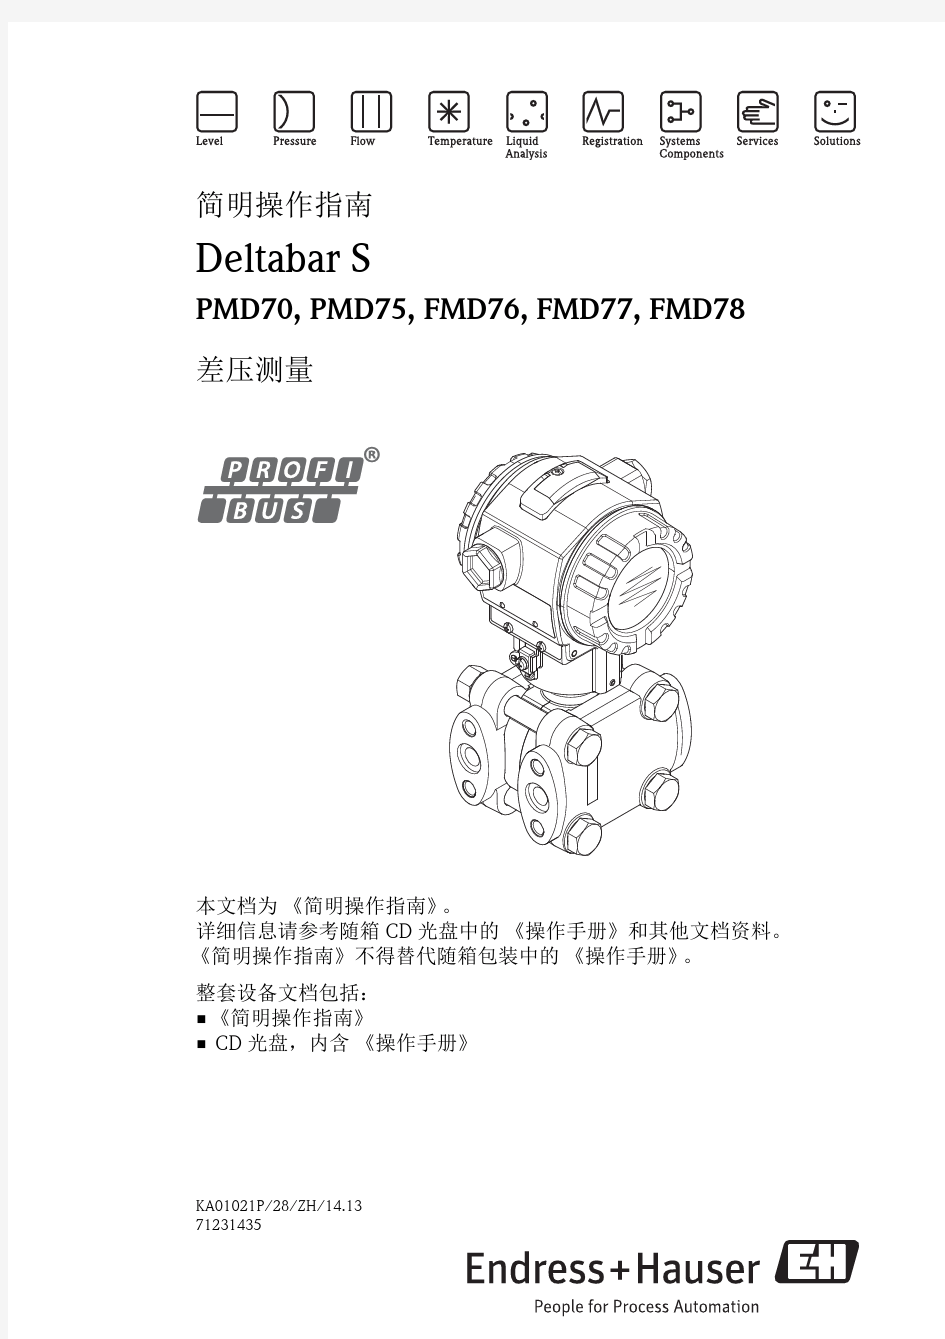 KA01021PZH Deltabar S PMD70-75 FMD76-78 Profibus 差压测量简明操作指南